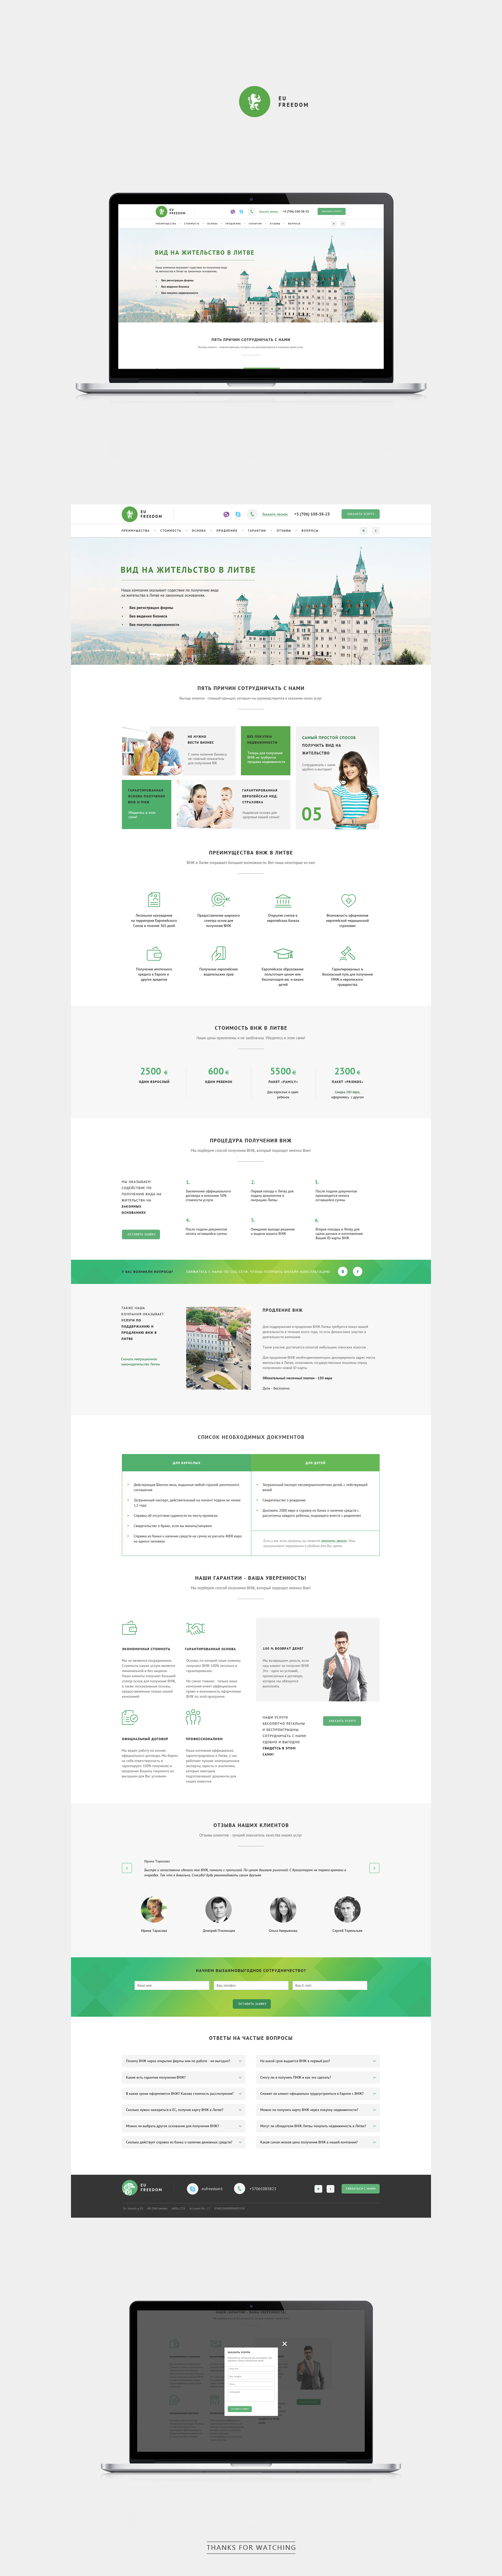 Web Minimalism landing page flat design green White